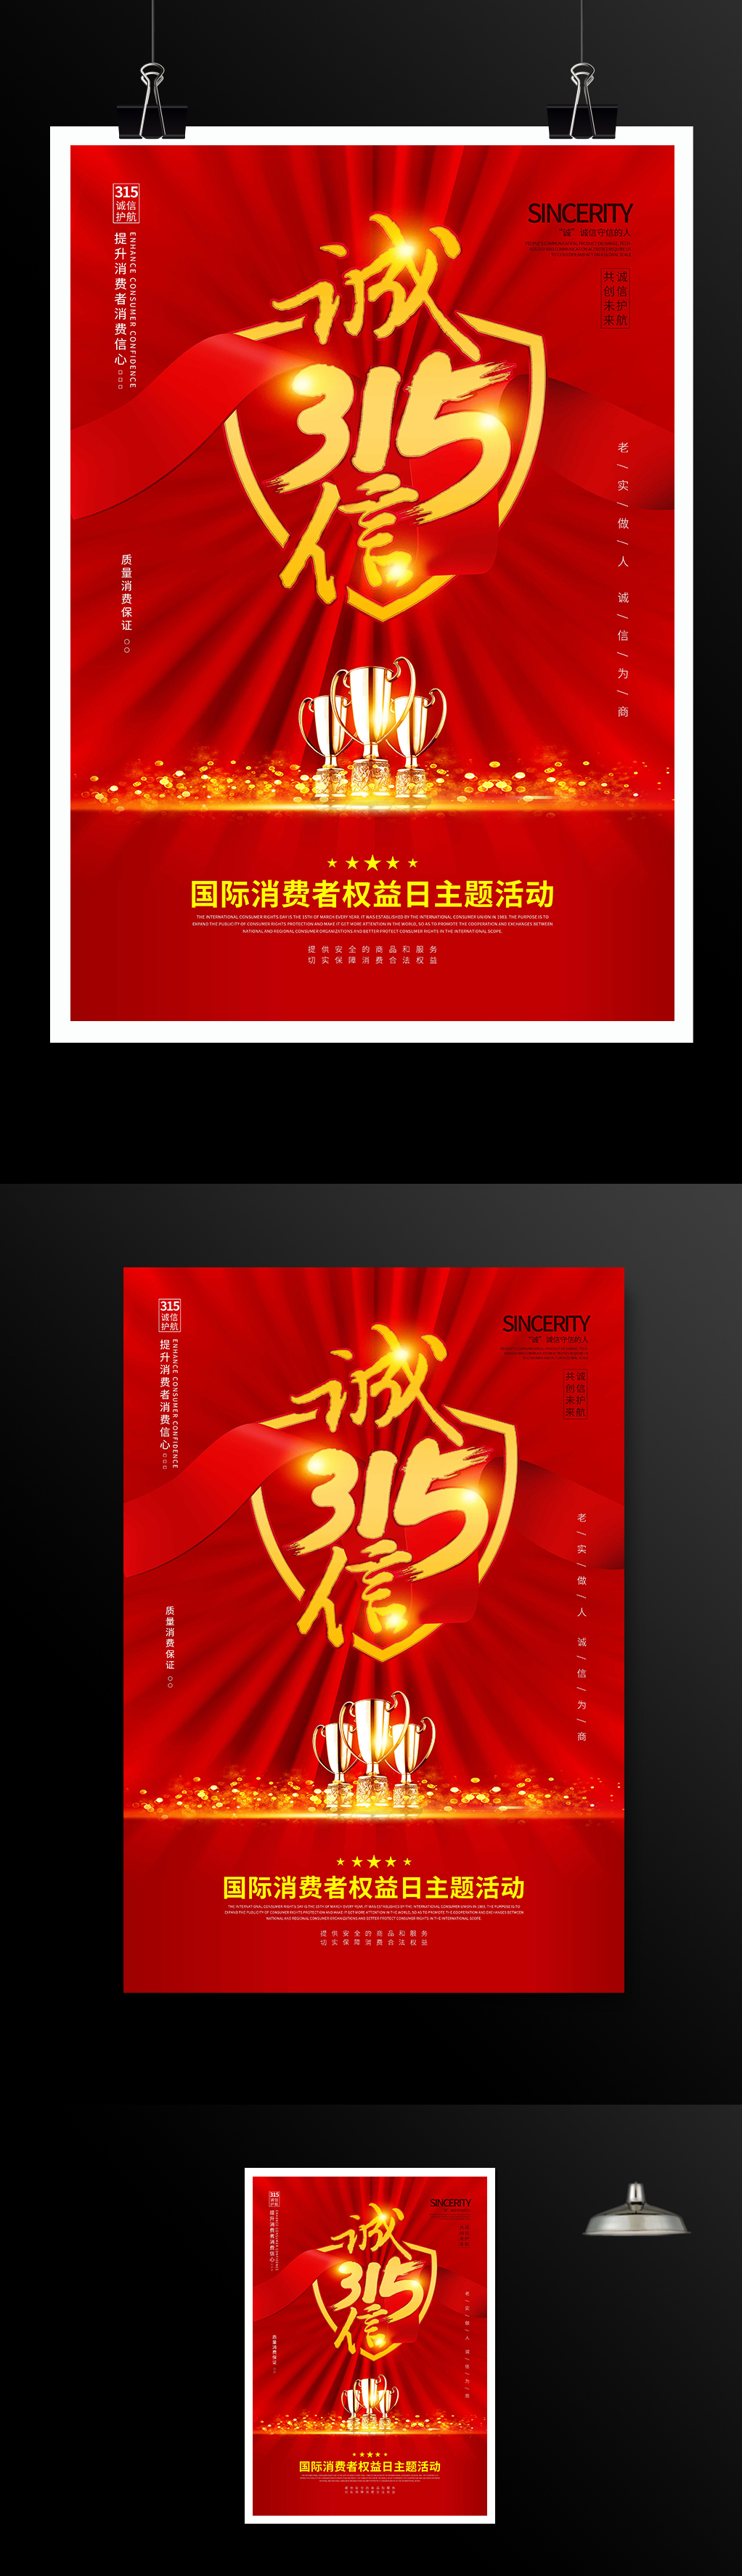 红色喜庆诚信315消费者权益日主题海报